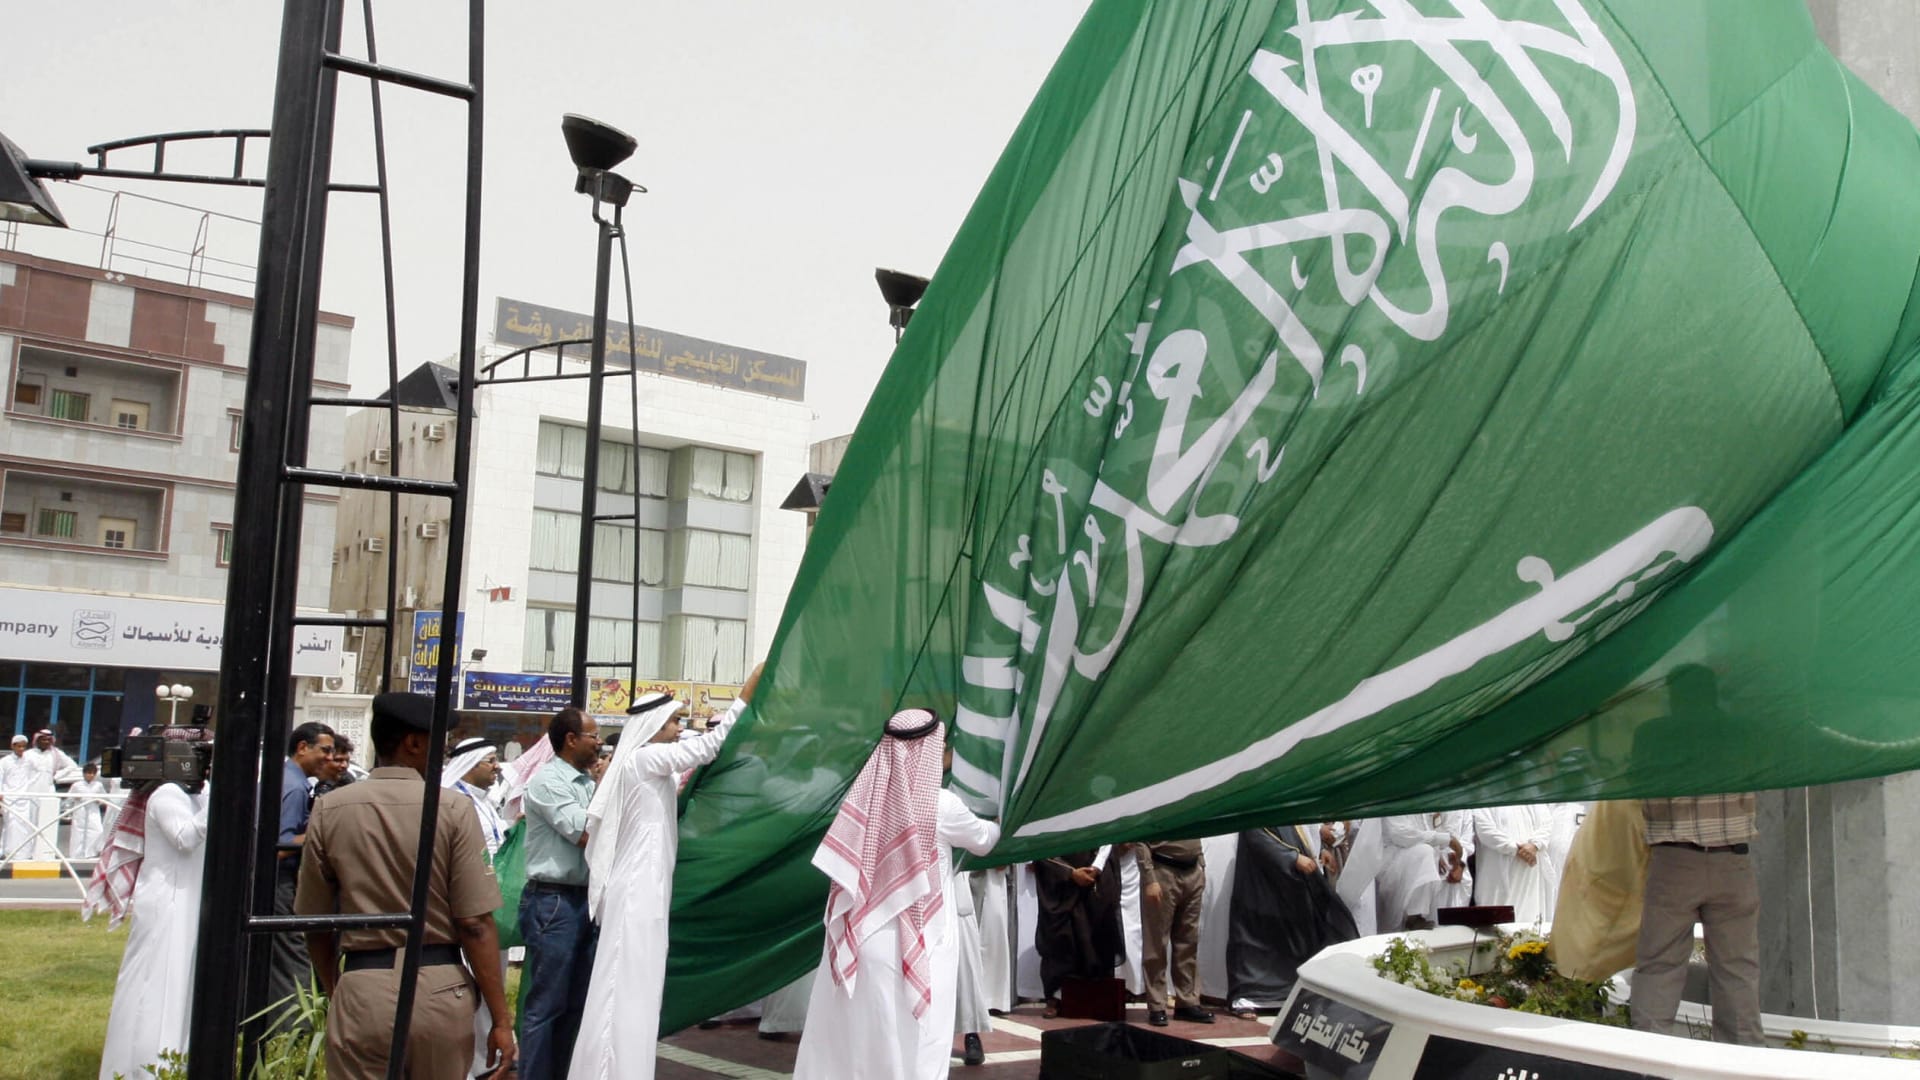 صورة ارشيفية من مراسم رفع علم سعودي ضخم على سارية في الدمام العام 2008